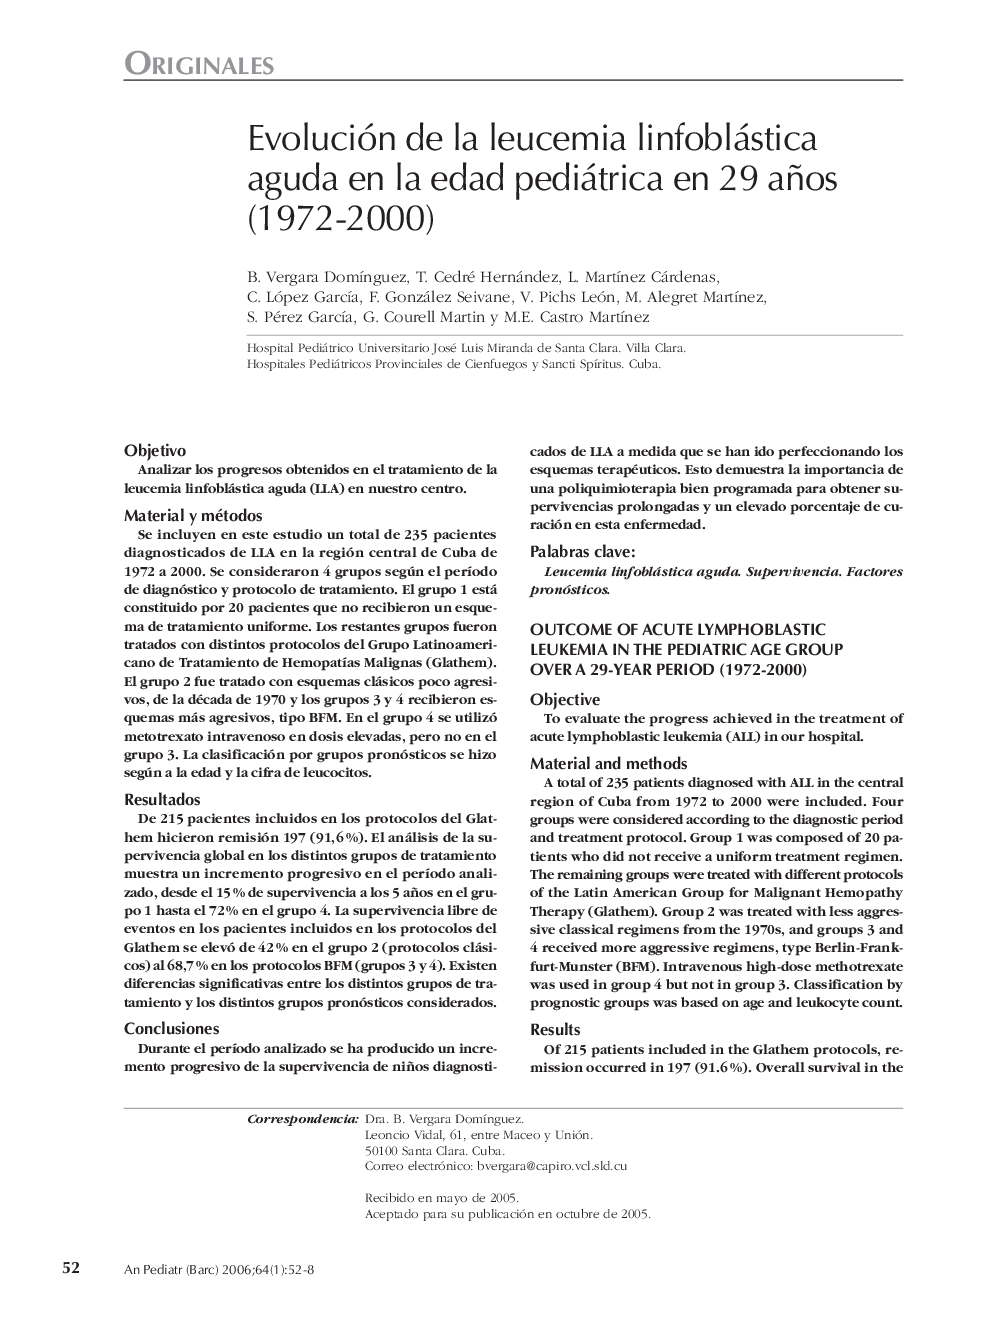 Evolución de la leucemia linfoblástica aguda en la edad pediátrica en 29 años (1972-2000)